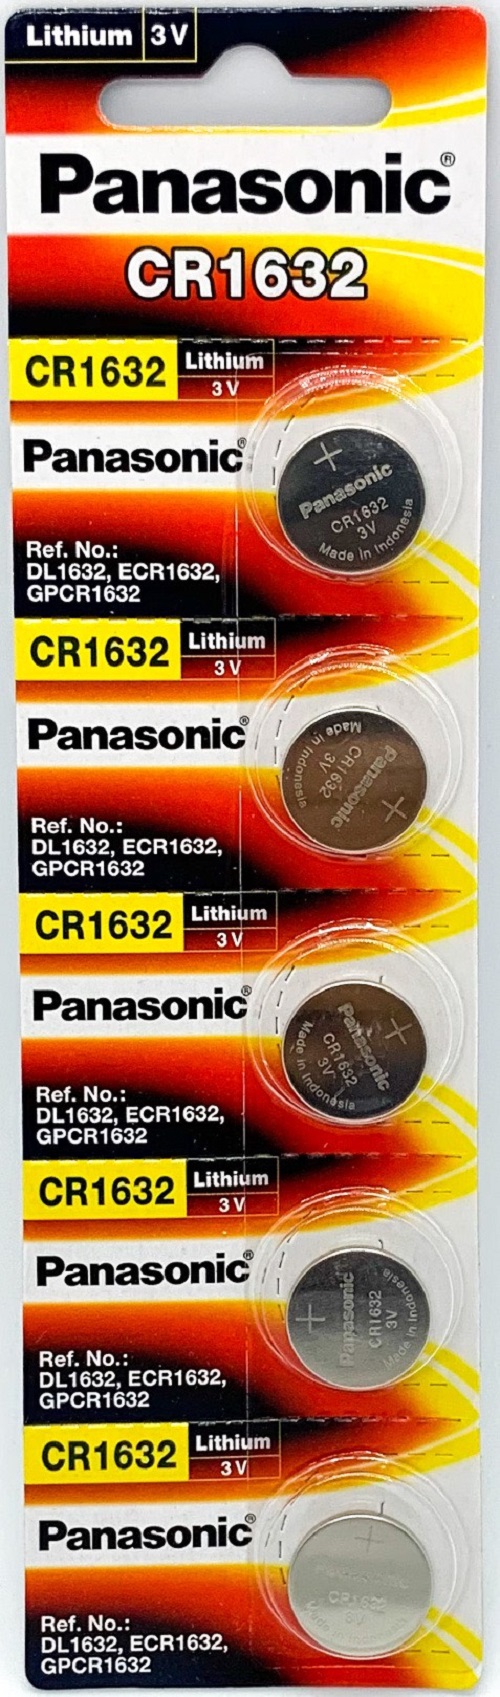 Pin CR1632 Panasonic Lithium 3V Vỉ 5 viên sử dụng được cho nhiều thiết bị với độ bền và an toàn cao